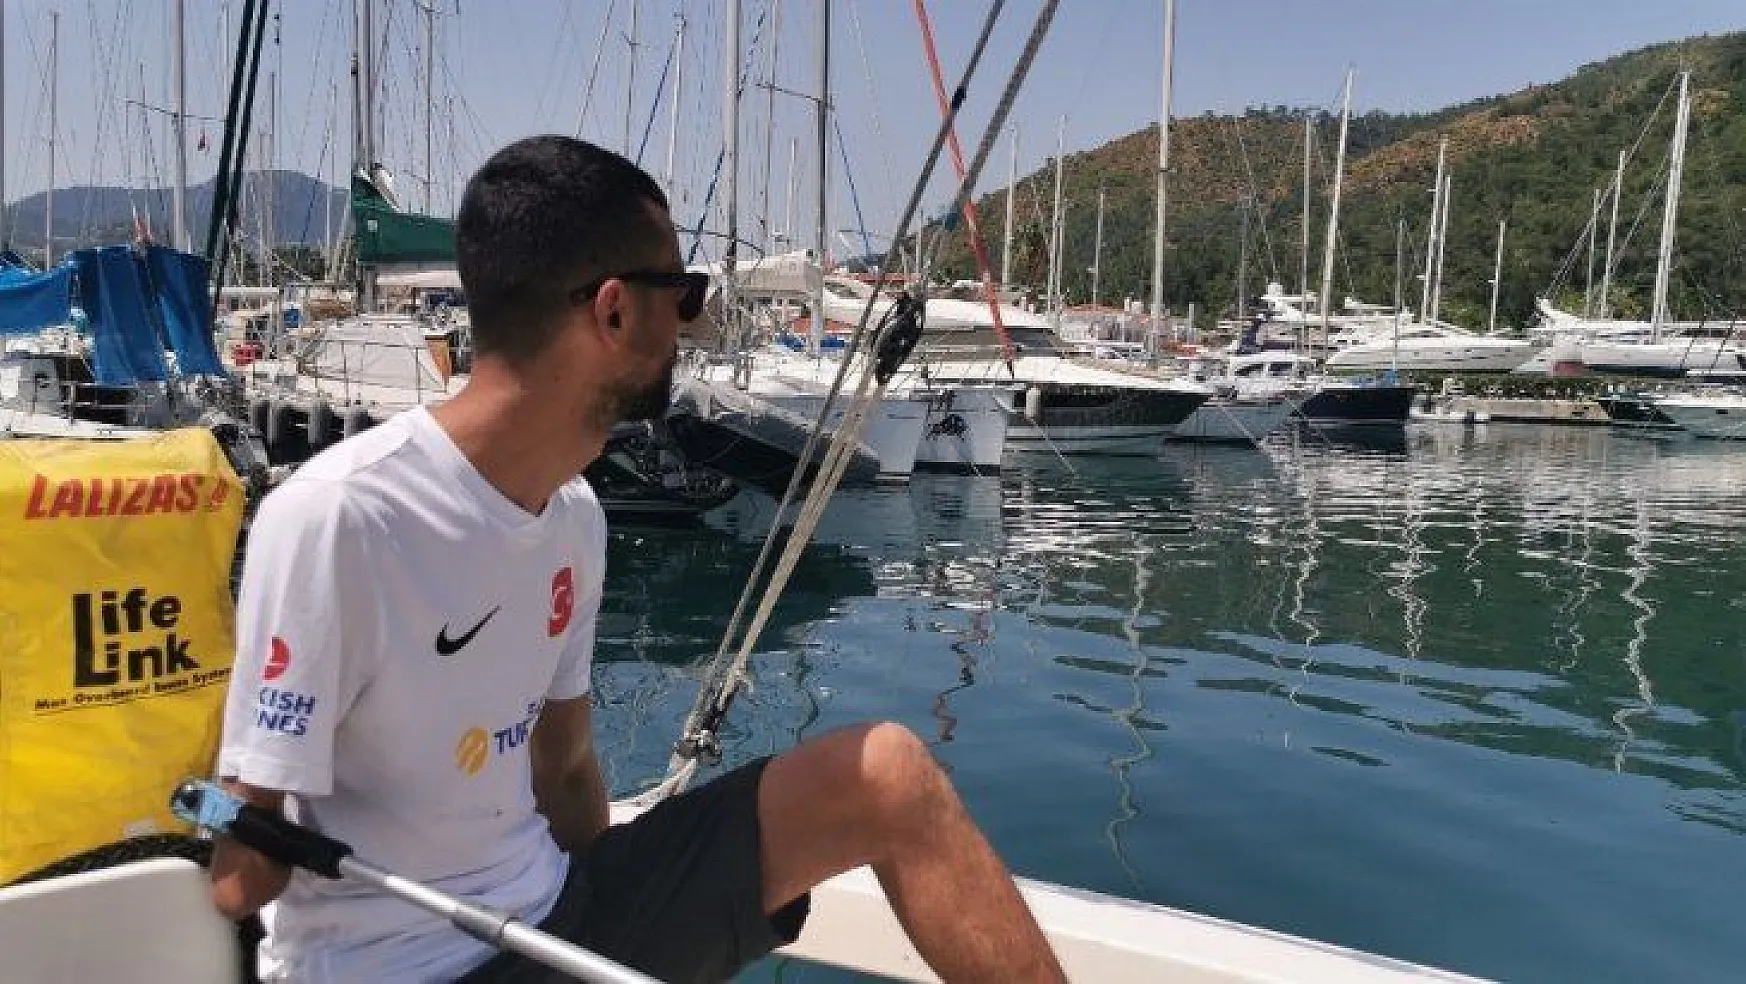 Engelli milli yelkencisi Hüseyin Akbulut 'Engeli beyinde aşıp, insanlardan uzaklaşmayalım'